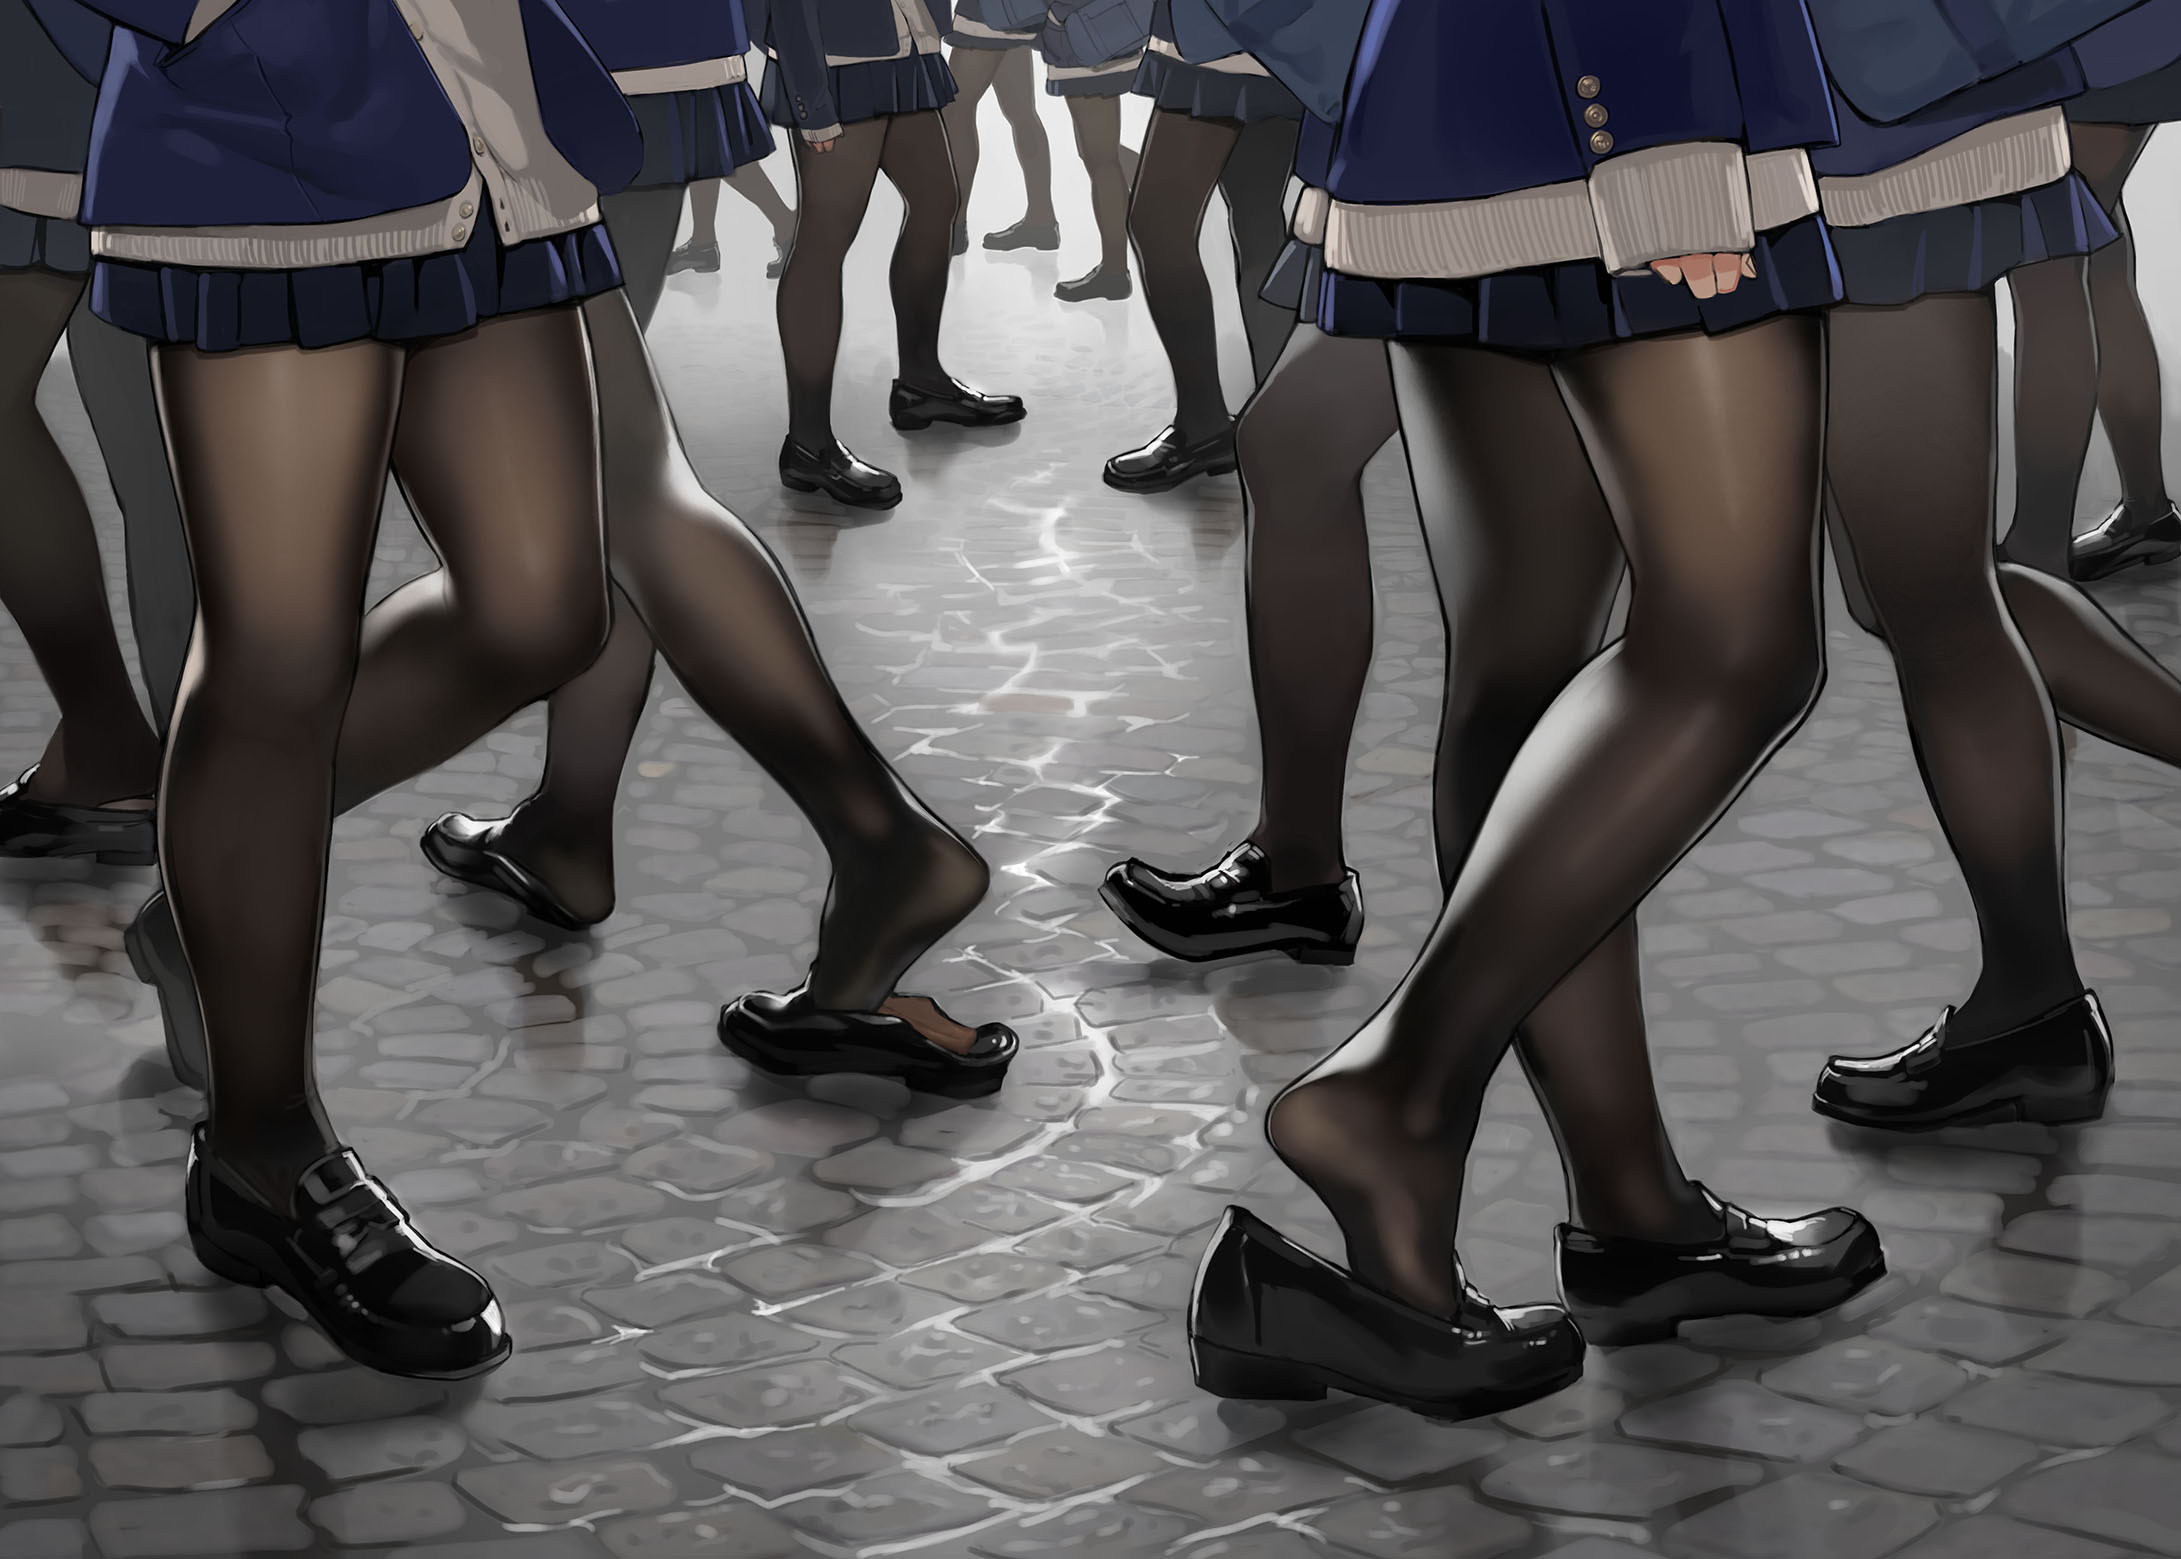 Yomu Anime Anime Girls Legs Feet Skirt 2181x1559